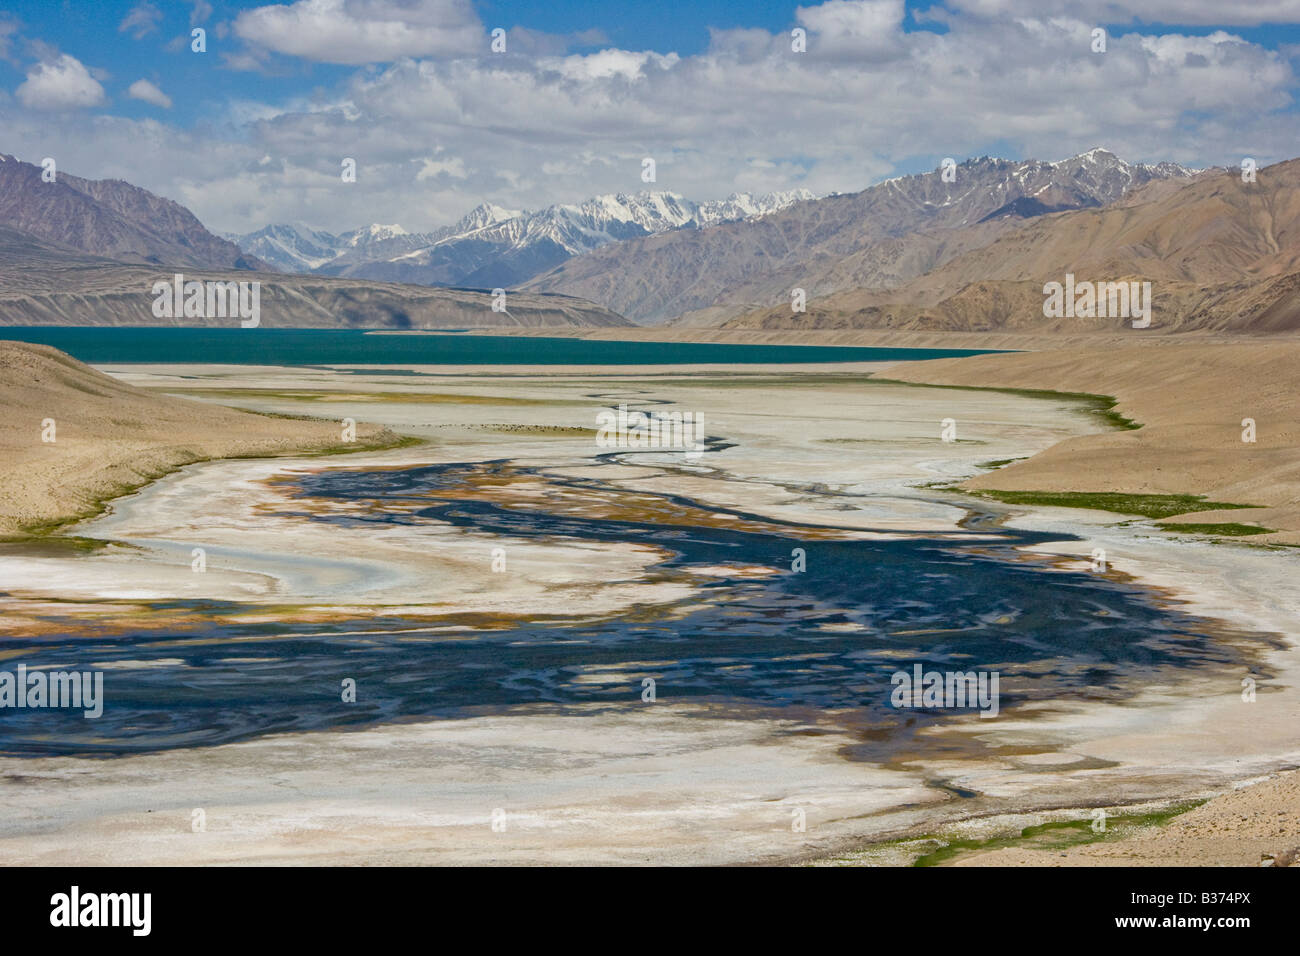 Alichur Valley in Eastern Pamirs near Alichur Tajikistan Stock Photo